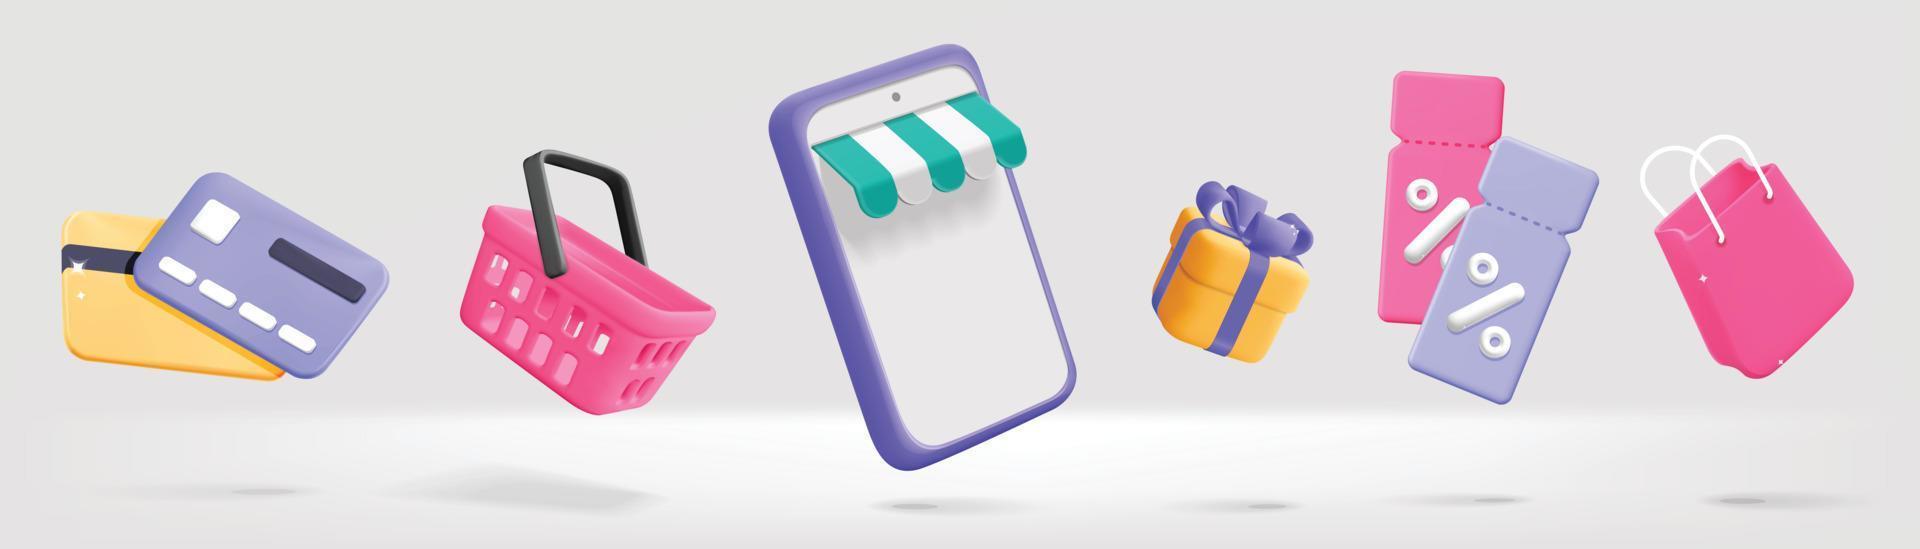 Conjunto de vectores 3d para artículos de compras en línea que flotan en el teléfono móvil, cupones, bolsos, presente, regalo, tarjeta de crédito y diseño de símbolo de cesta